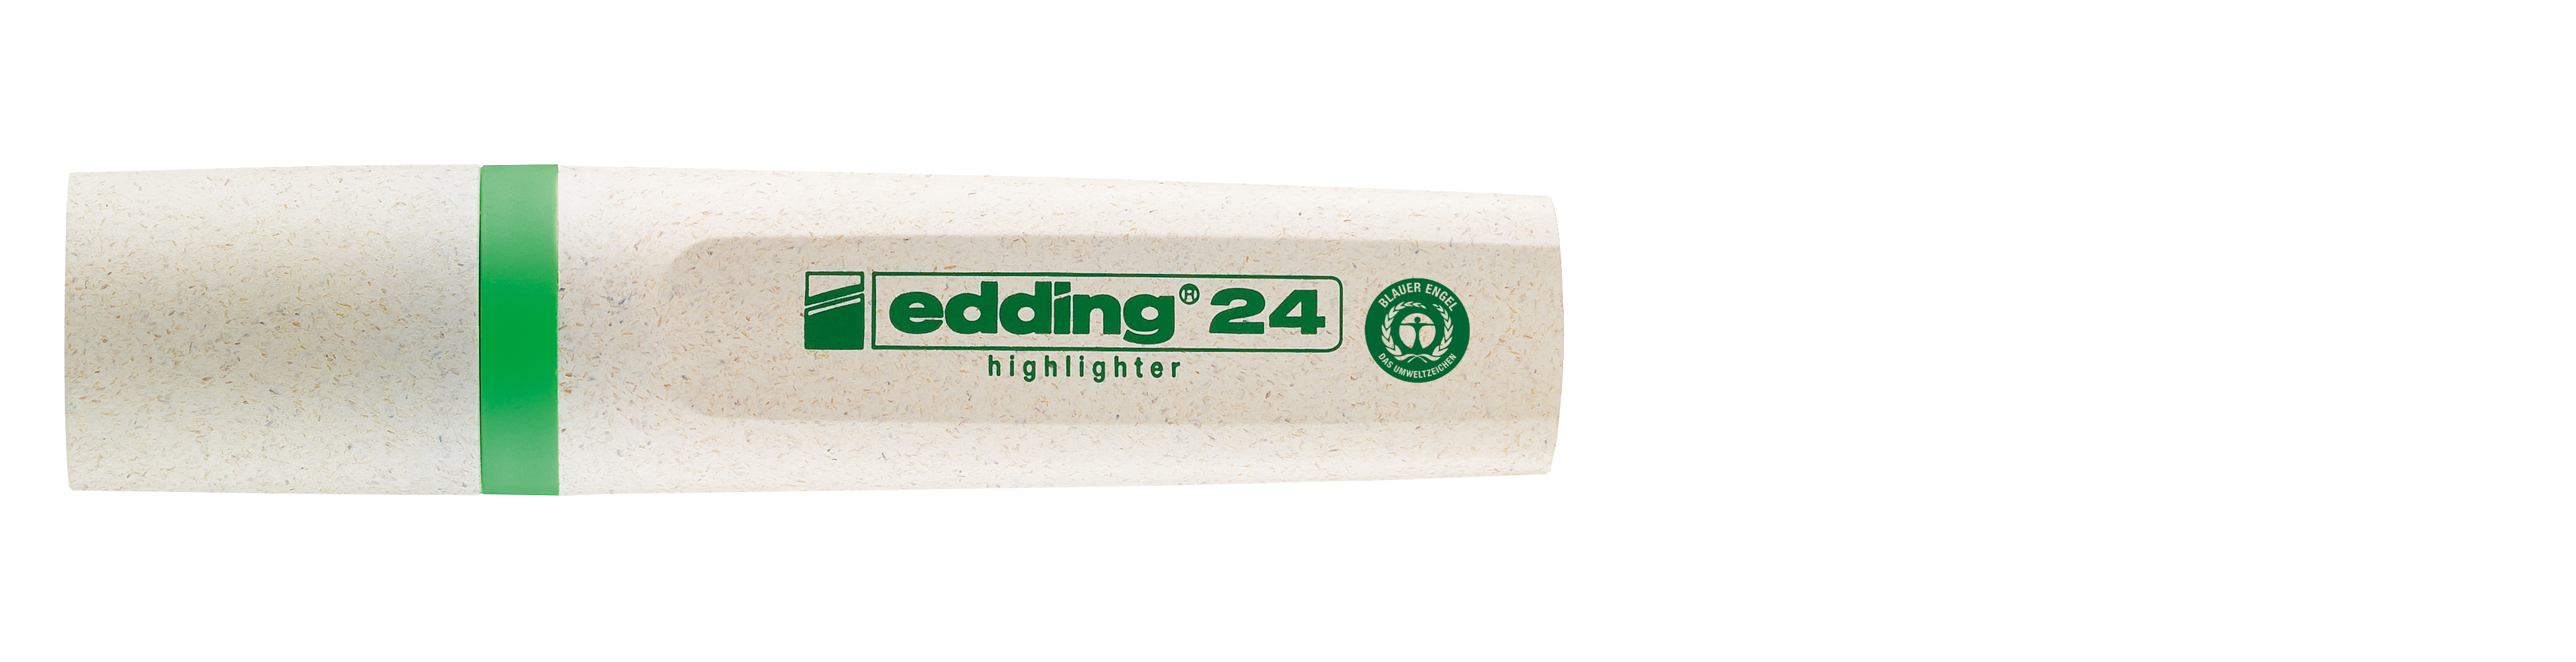 edding Textmarker Highlighter 24 EcoLine hellgrün